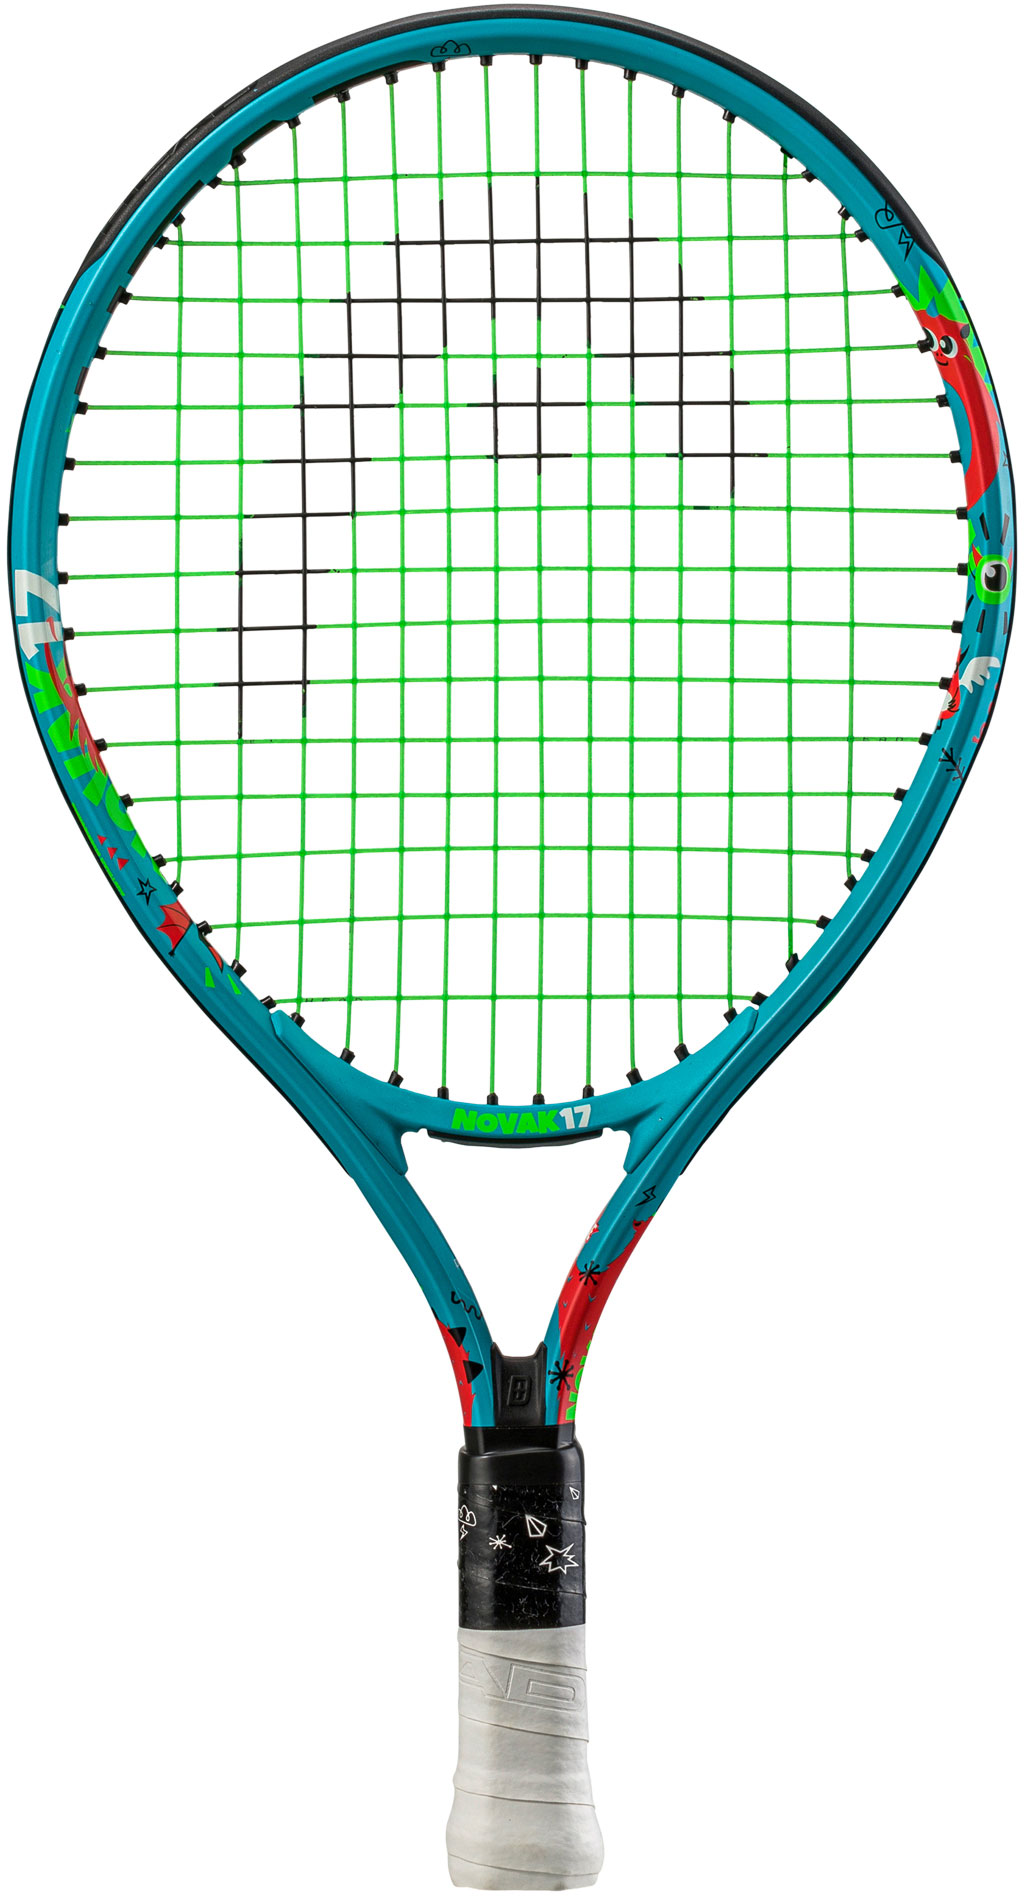 Children’s tennis racquet